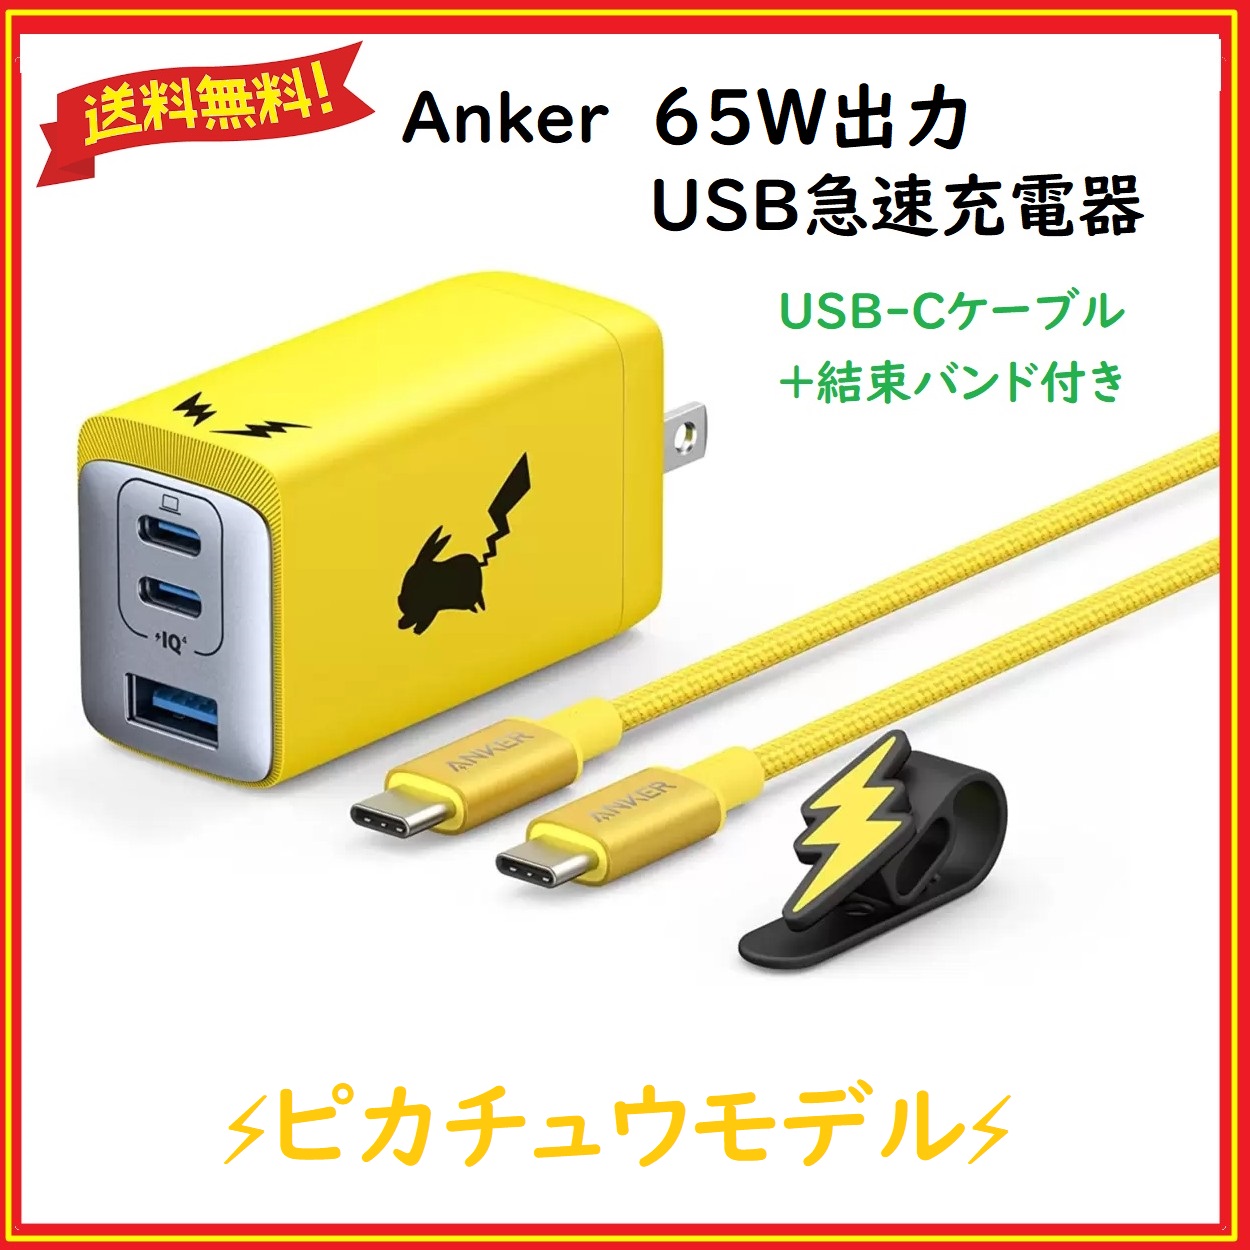 Anker(アンカー) USB急速充電器 ピカチュウモデル 65W高出力 